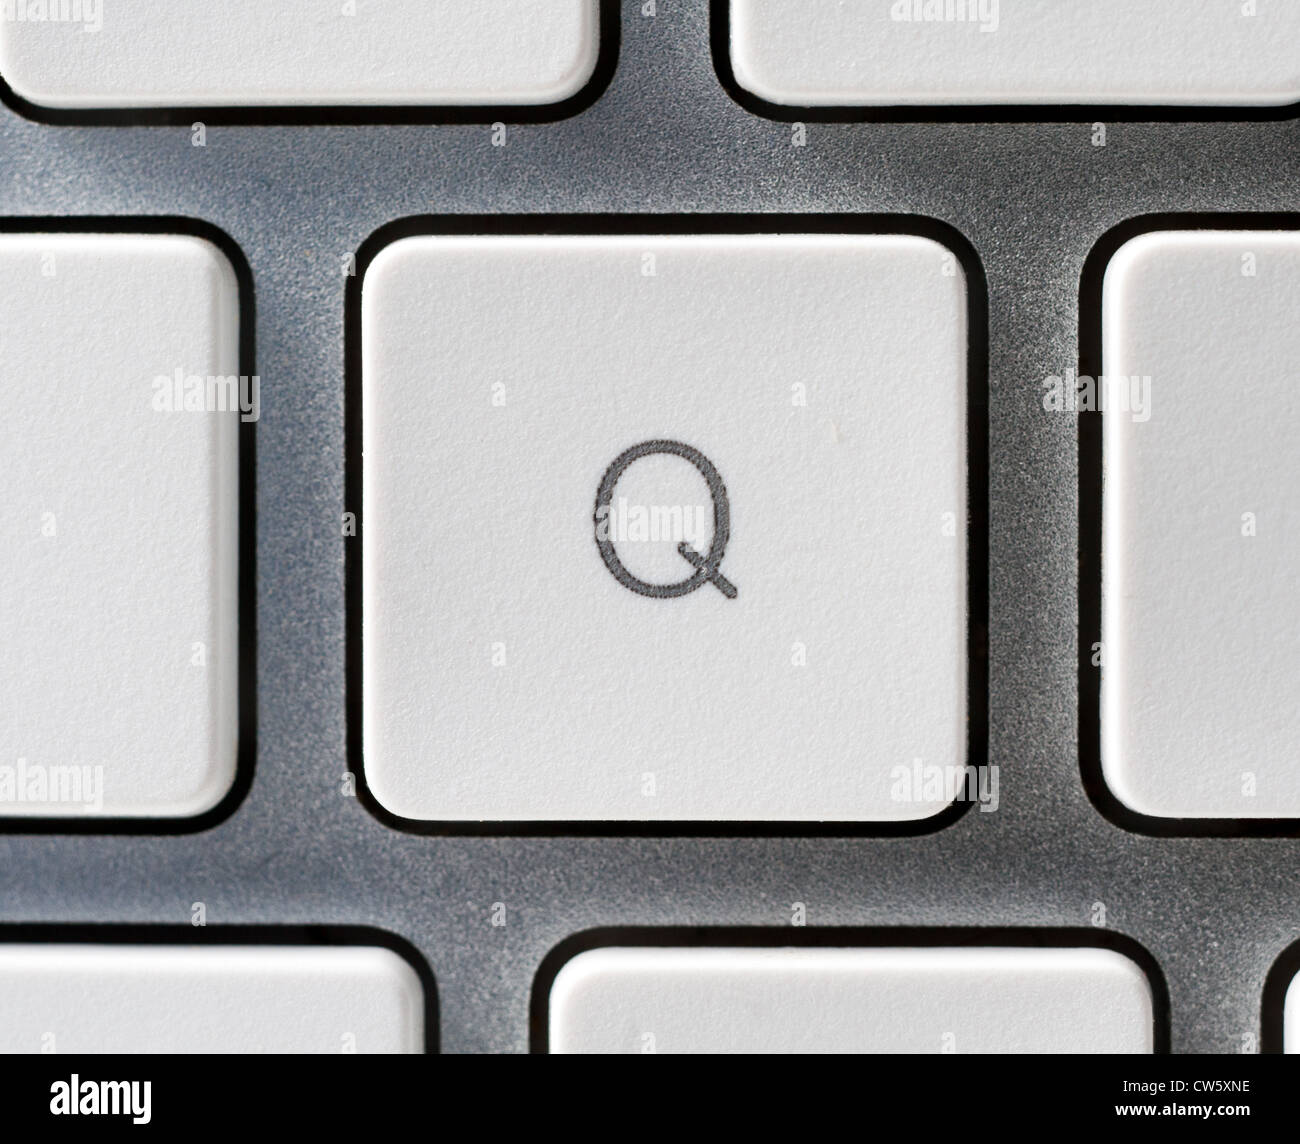 Buchstabe Q auf einer Apple-Tastatur Stockfoto